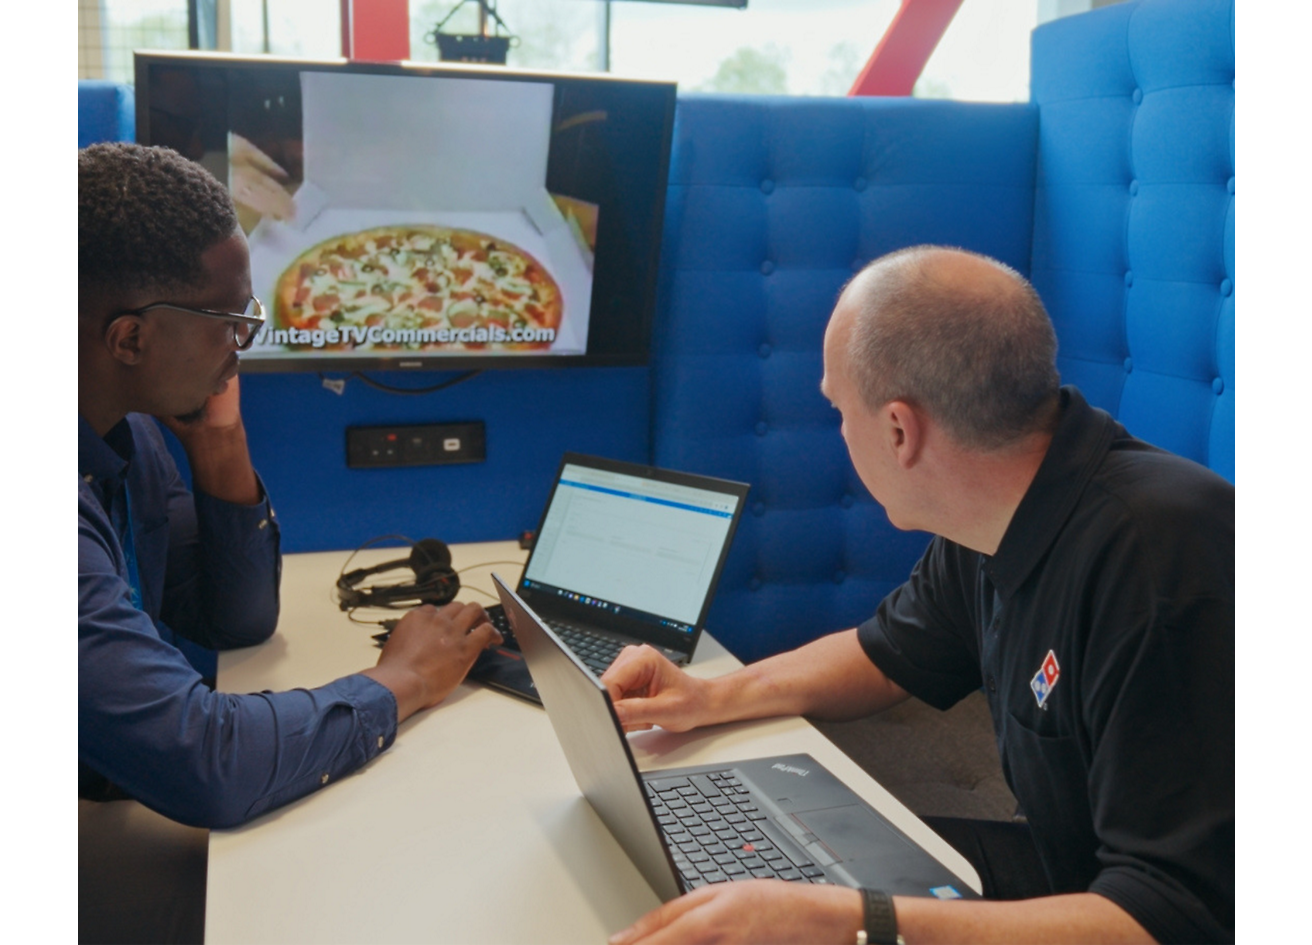 Два человека сидят с ноутбуком и обсуждают пиццу Dominos